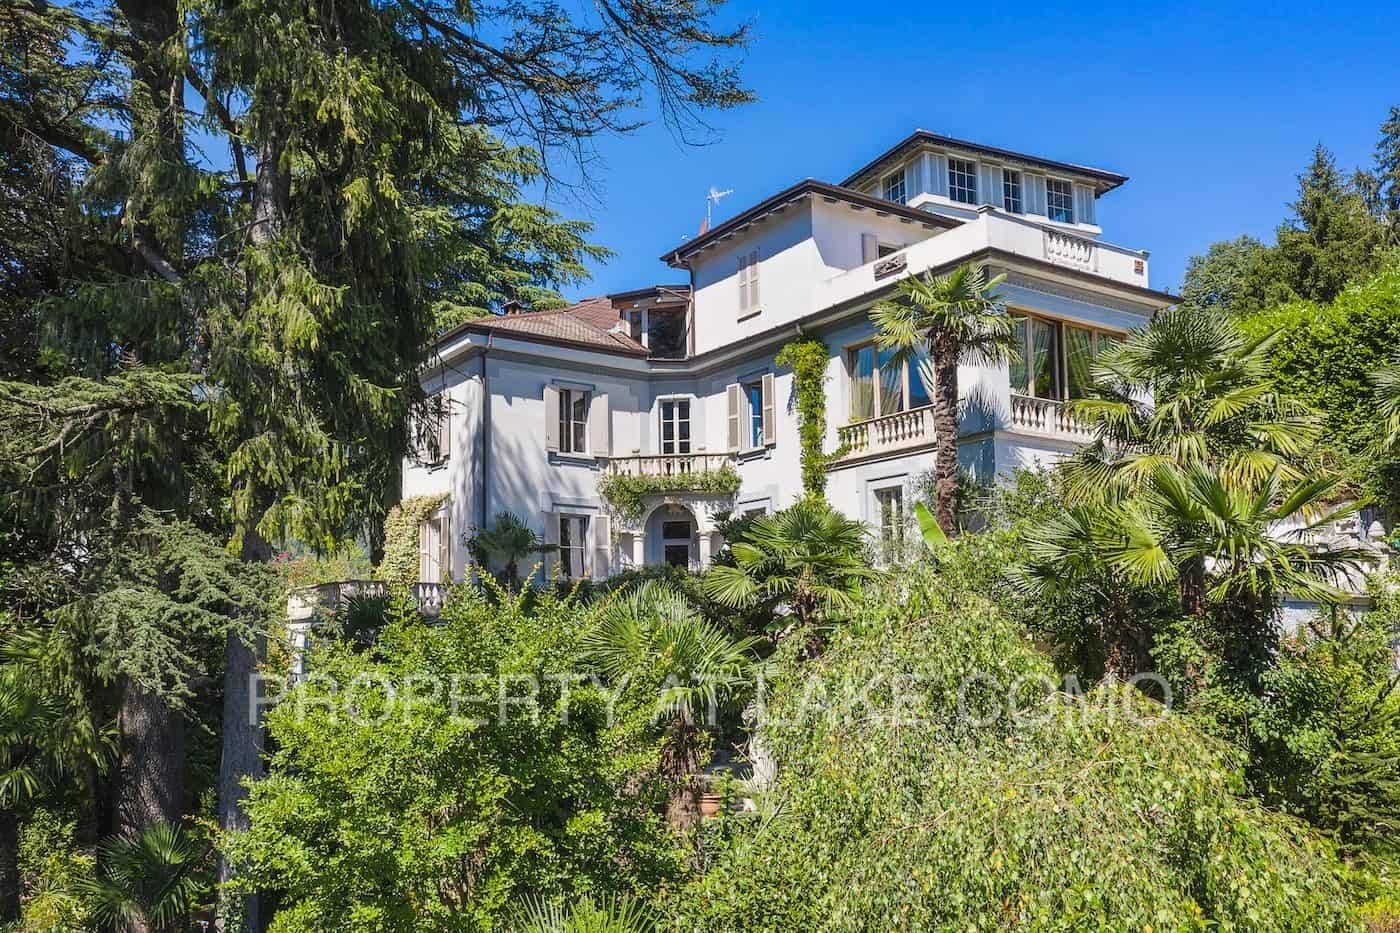 Photos Villa Gina: Magnificent Historic Residence on Lake Como